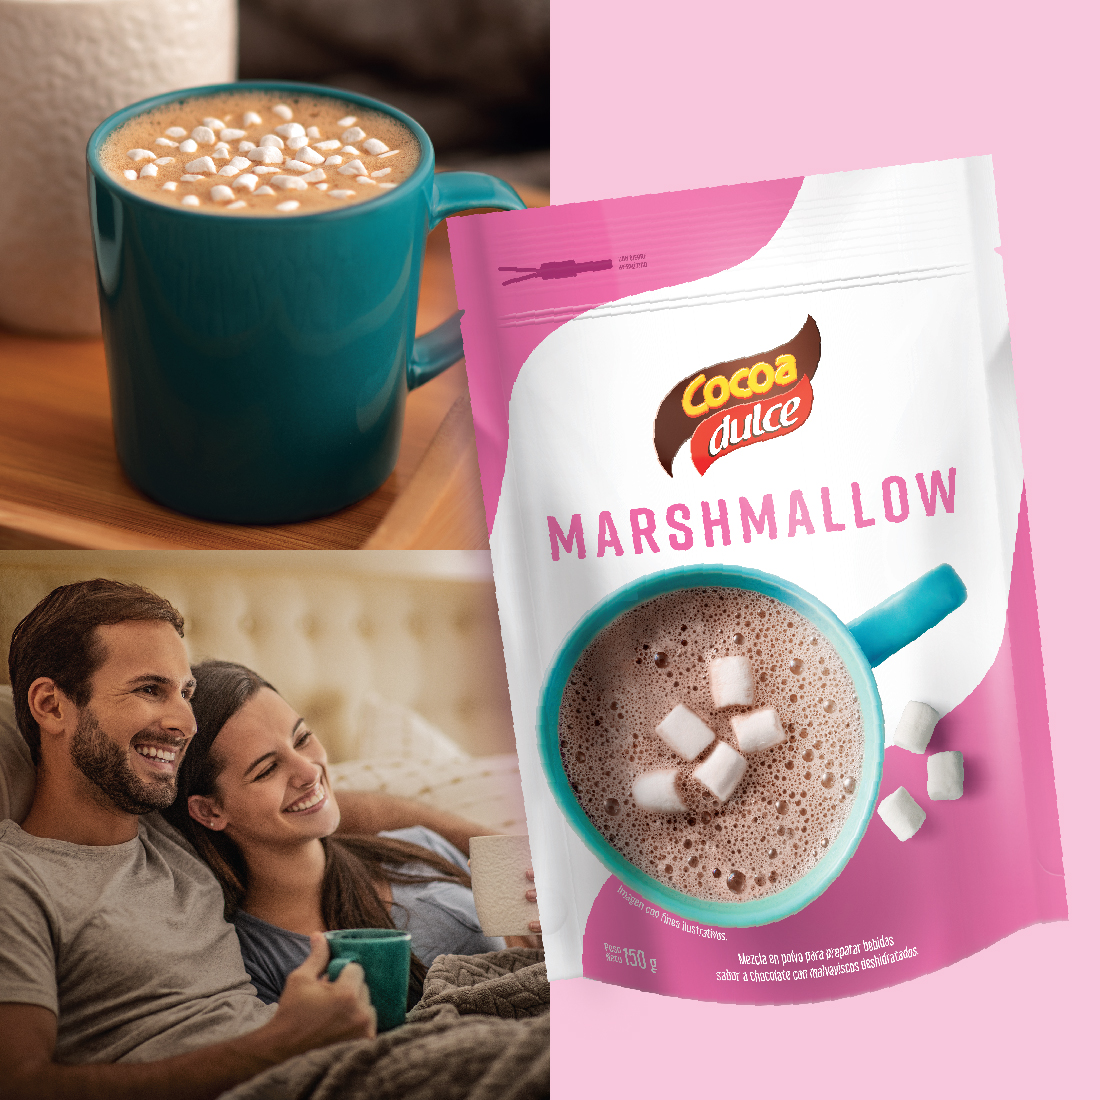 Cocoa Marshmallow